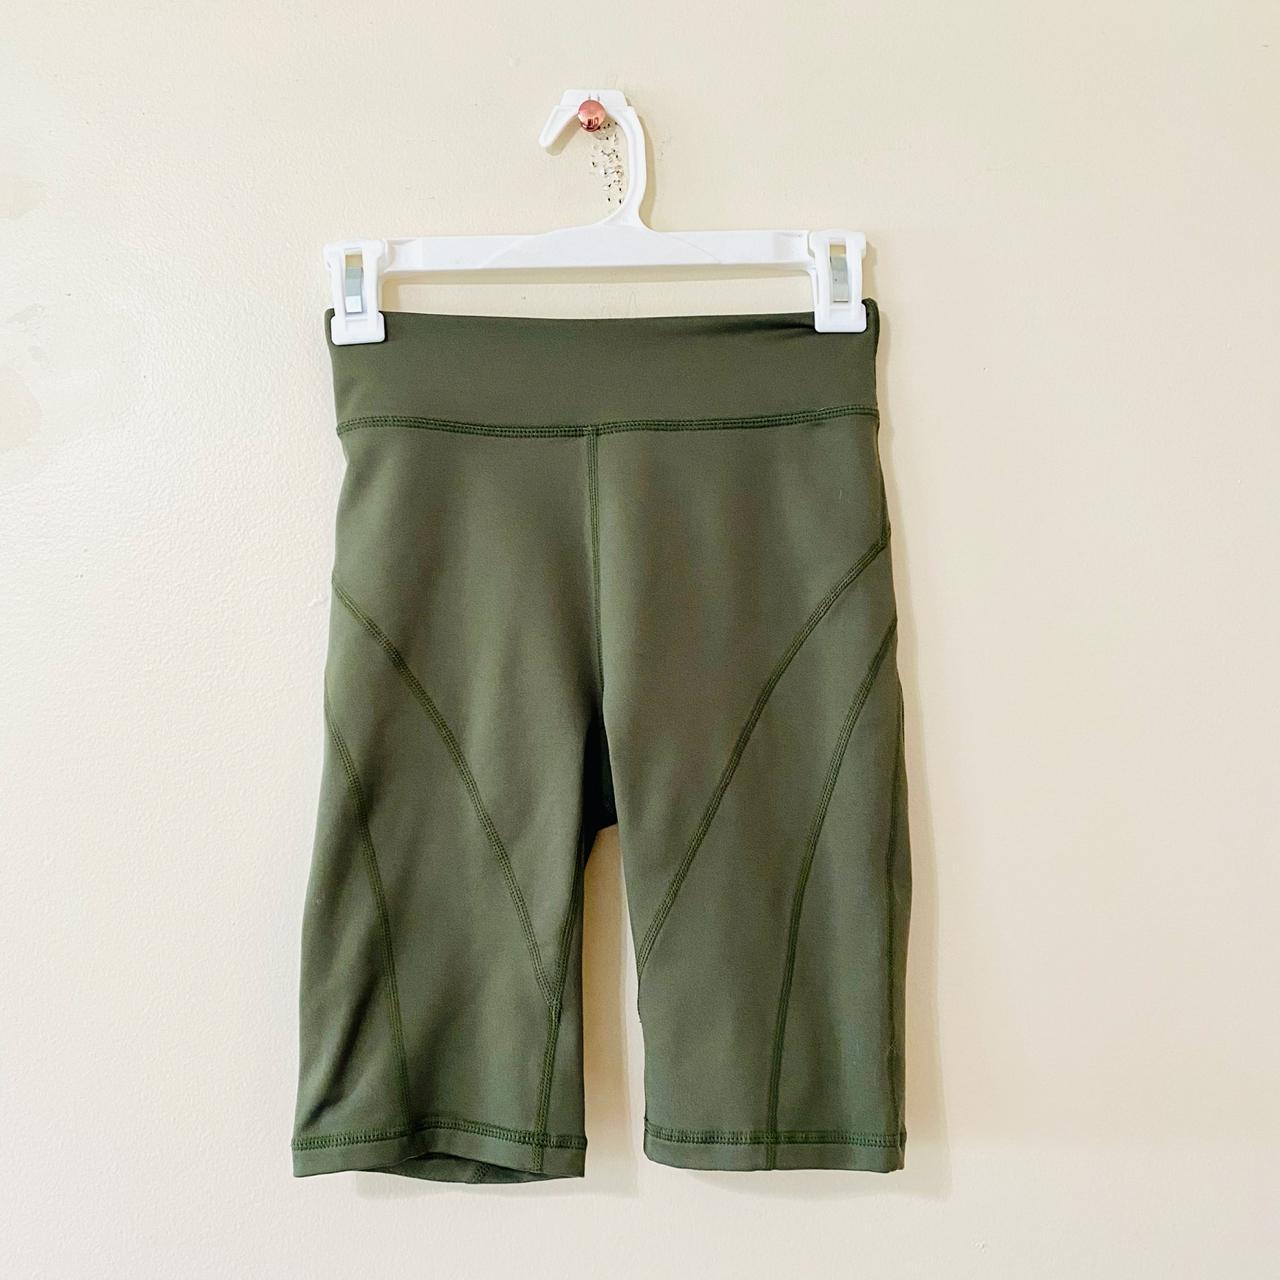 Lululemon Biker Shorts Olive / Sage Green Perfect - Depop